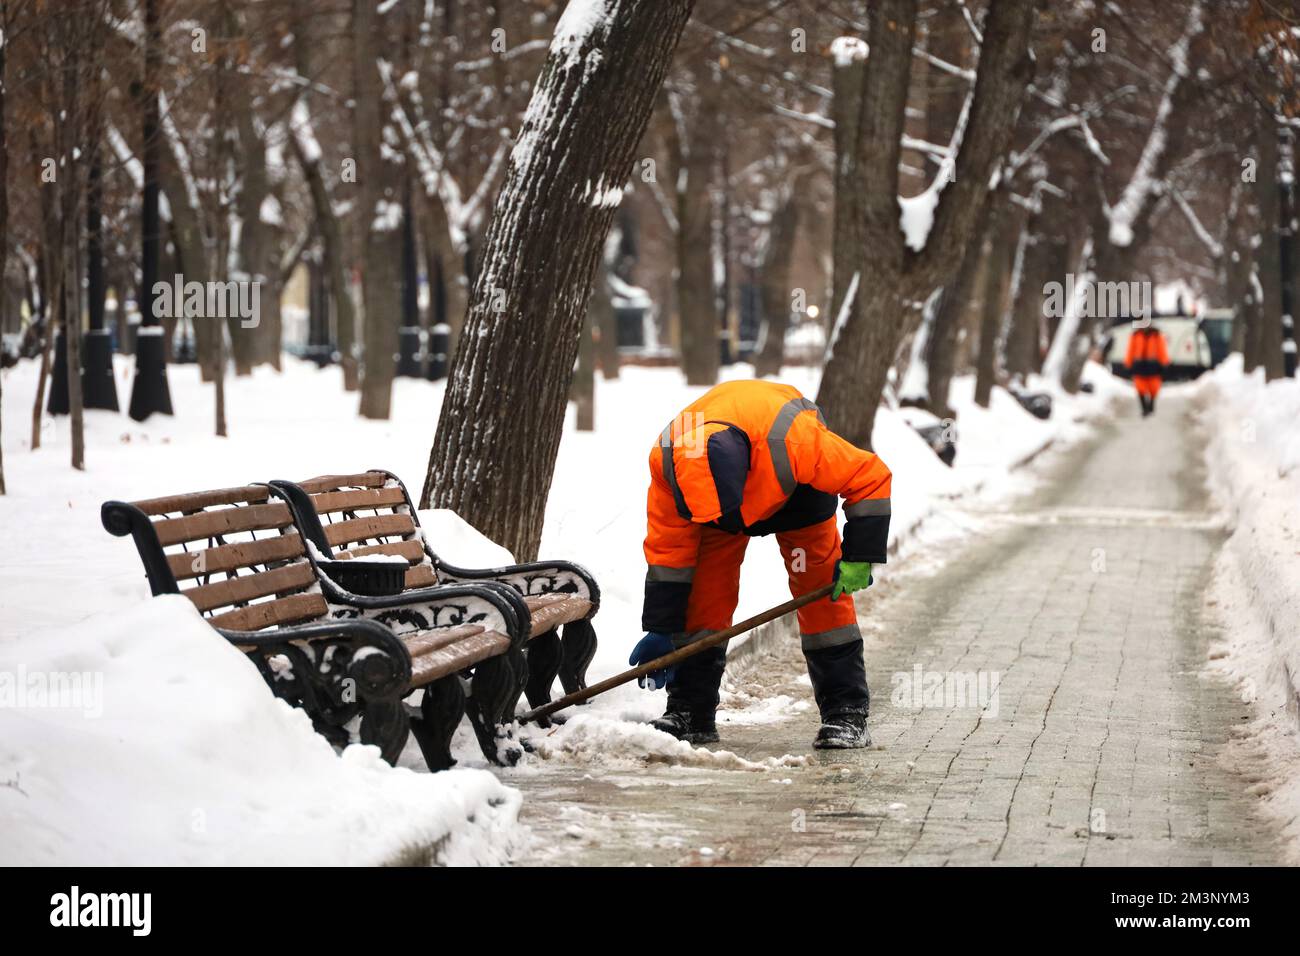 Un employé nettoie la neige dans les rues de la ville après une chute de neige. Homme avec une pelle dans le parc d'hiver Banque D'Images